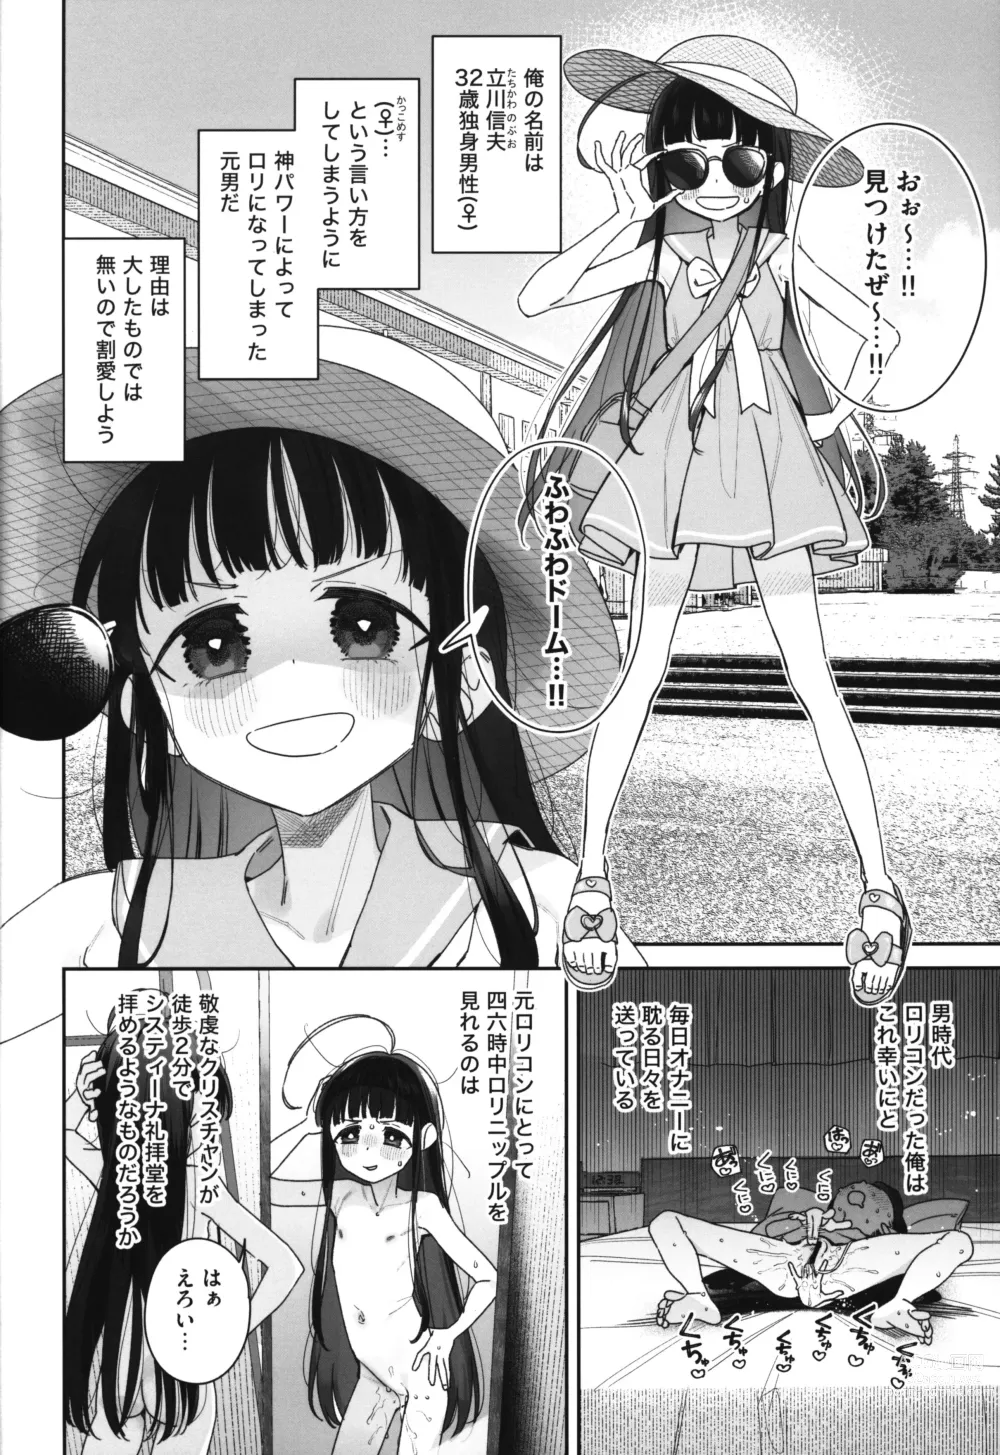 Page 3 of doujinshi TS Loli Oji-san no Bouken Kanwa -Fuwafuwa Dome Hen- - The Adventures of TS Lori guy.